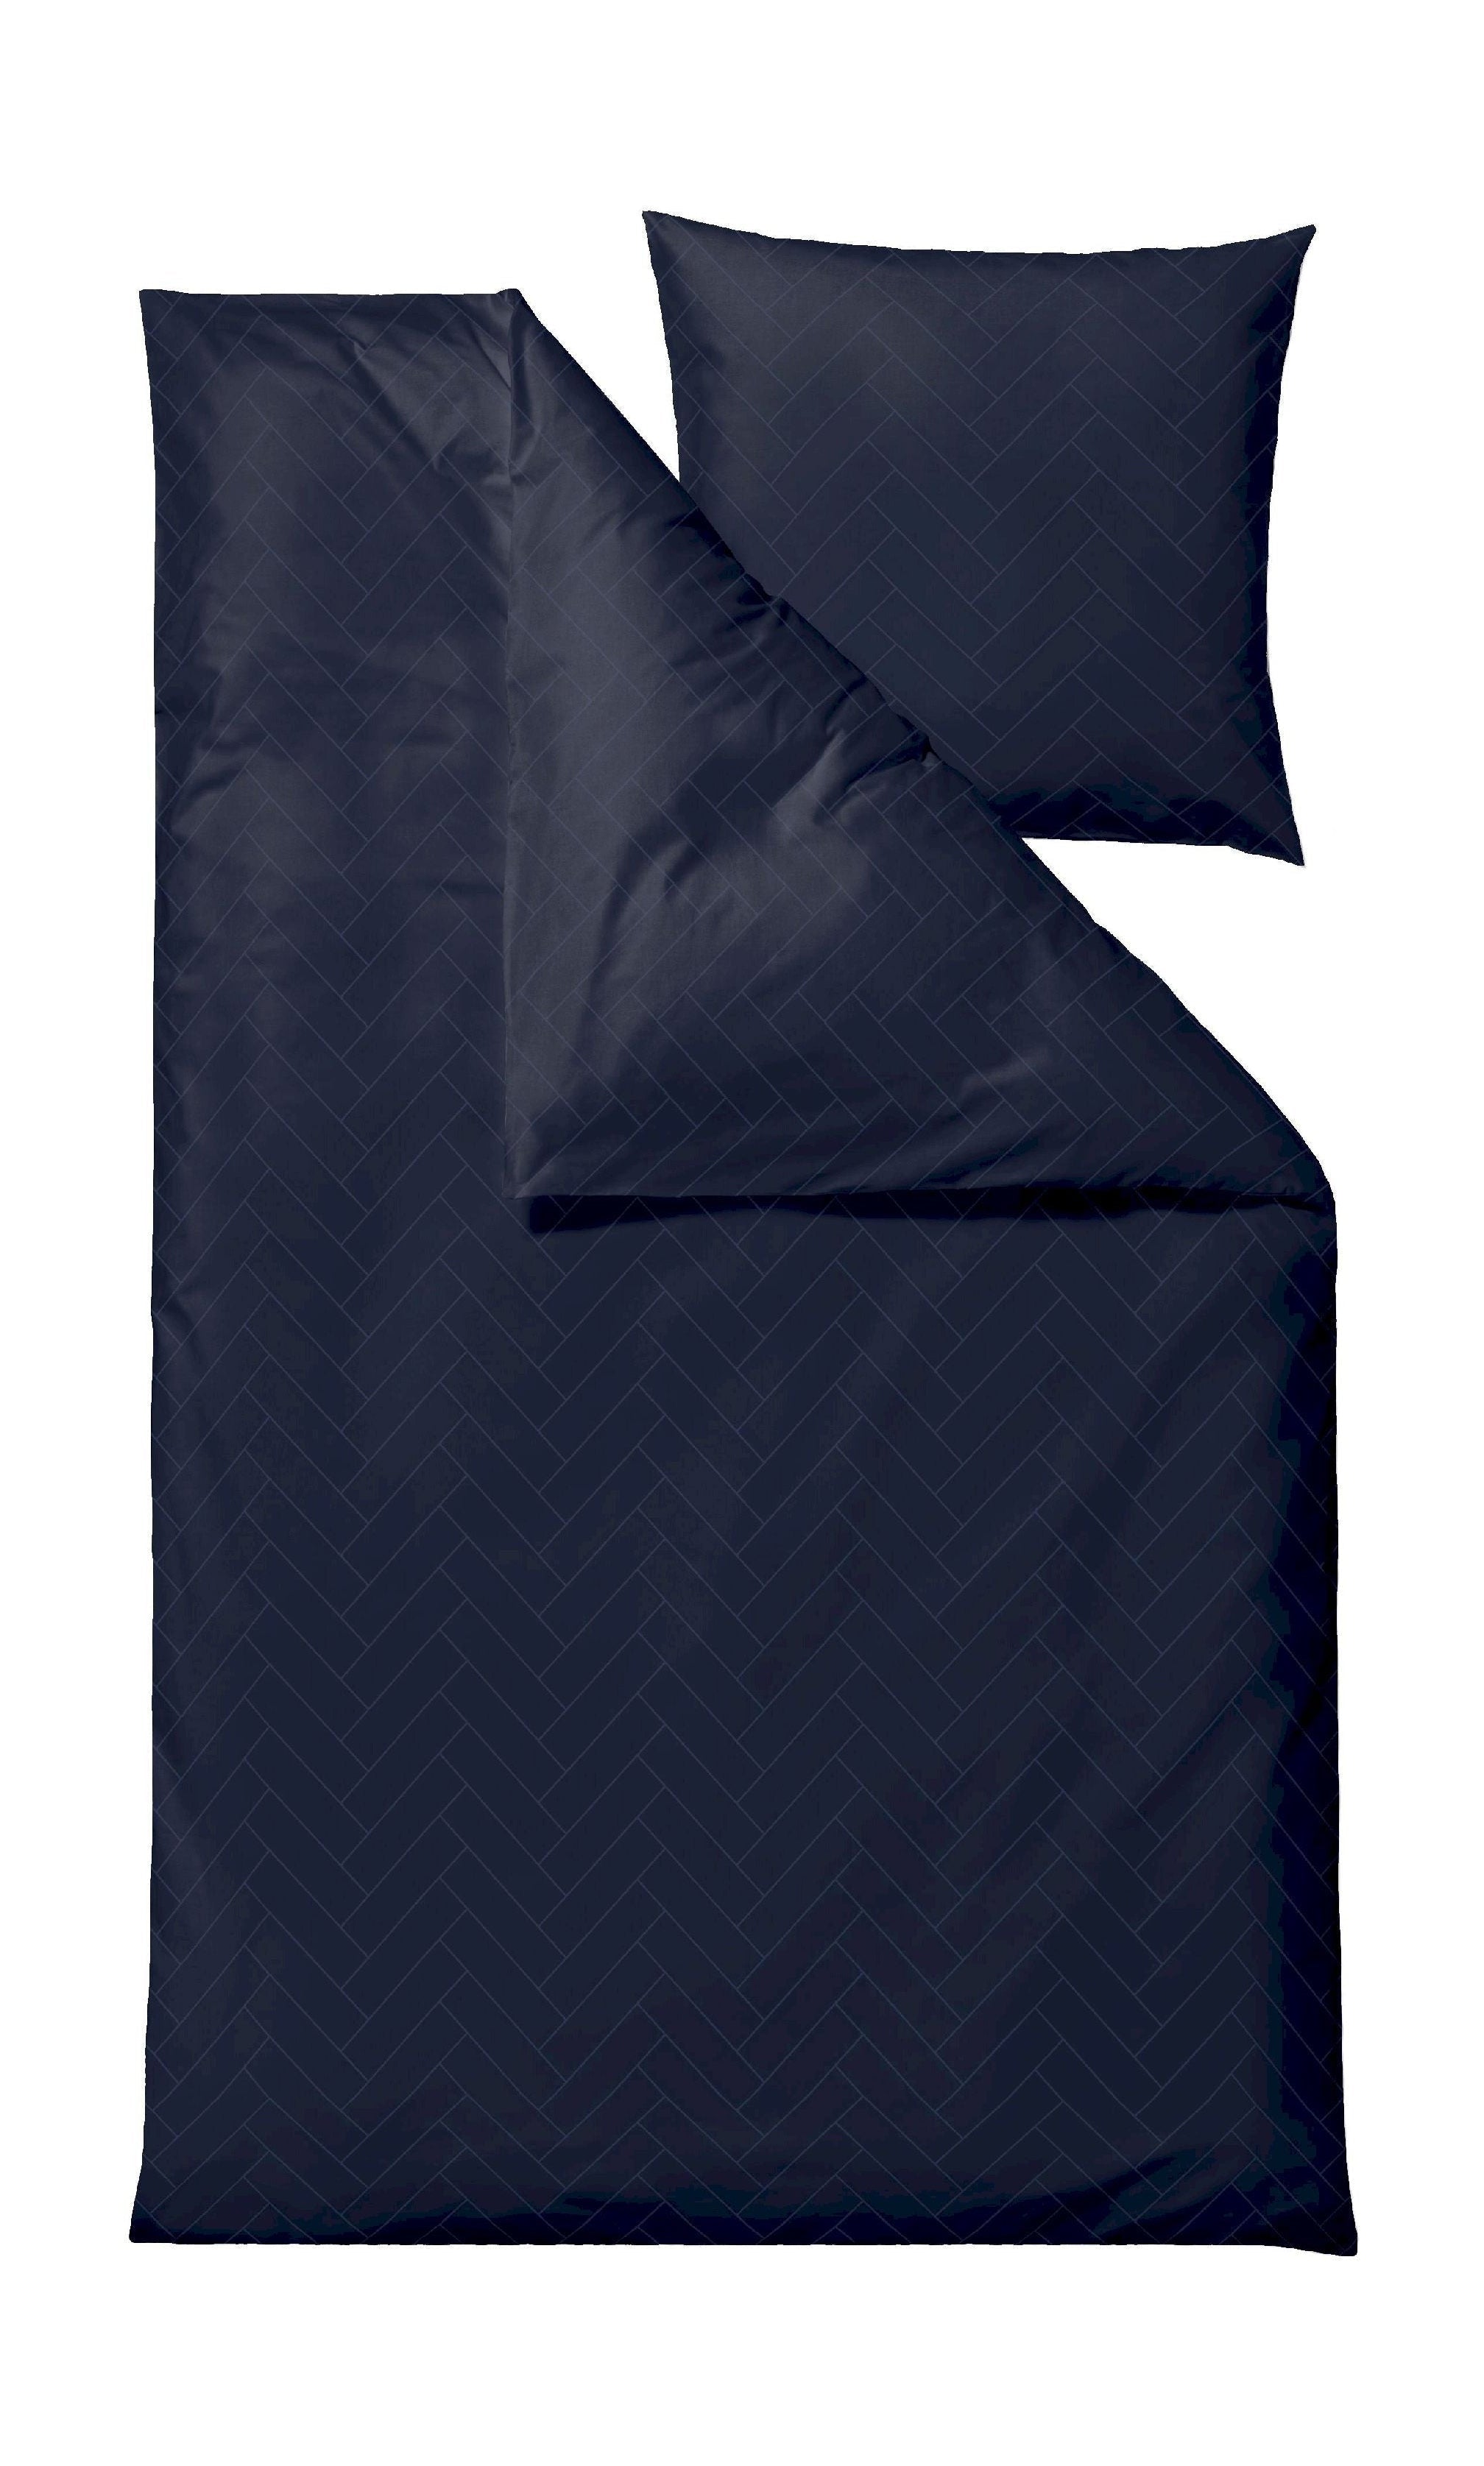 Södahl Fliser sengelinned 140x200 cm, blækblå